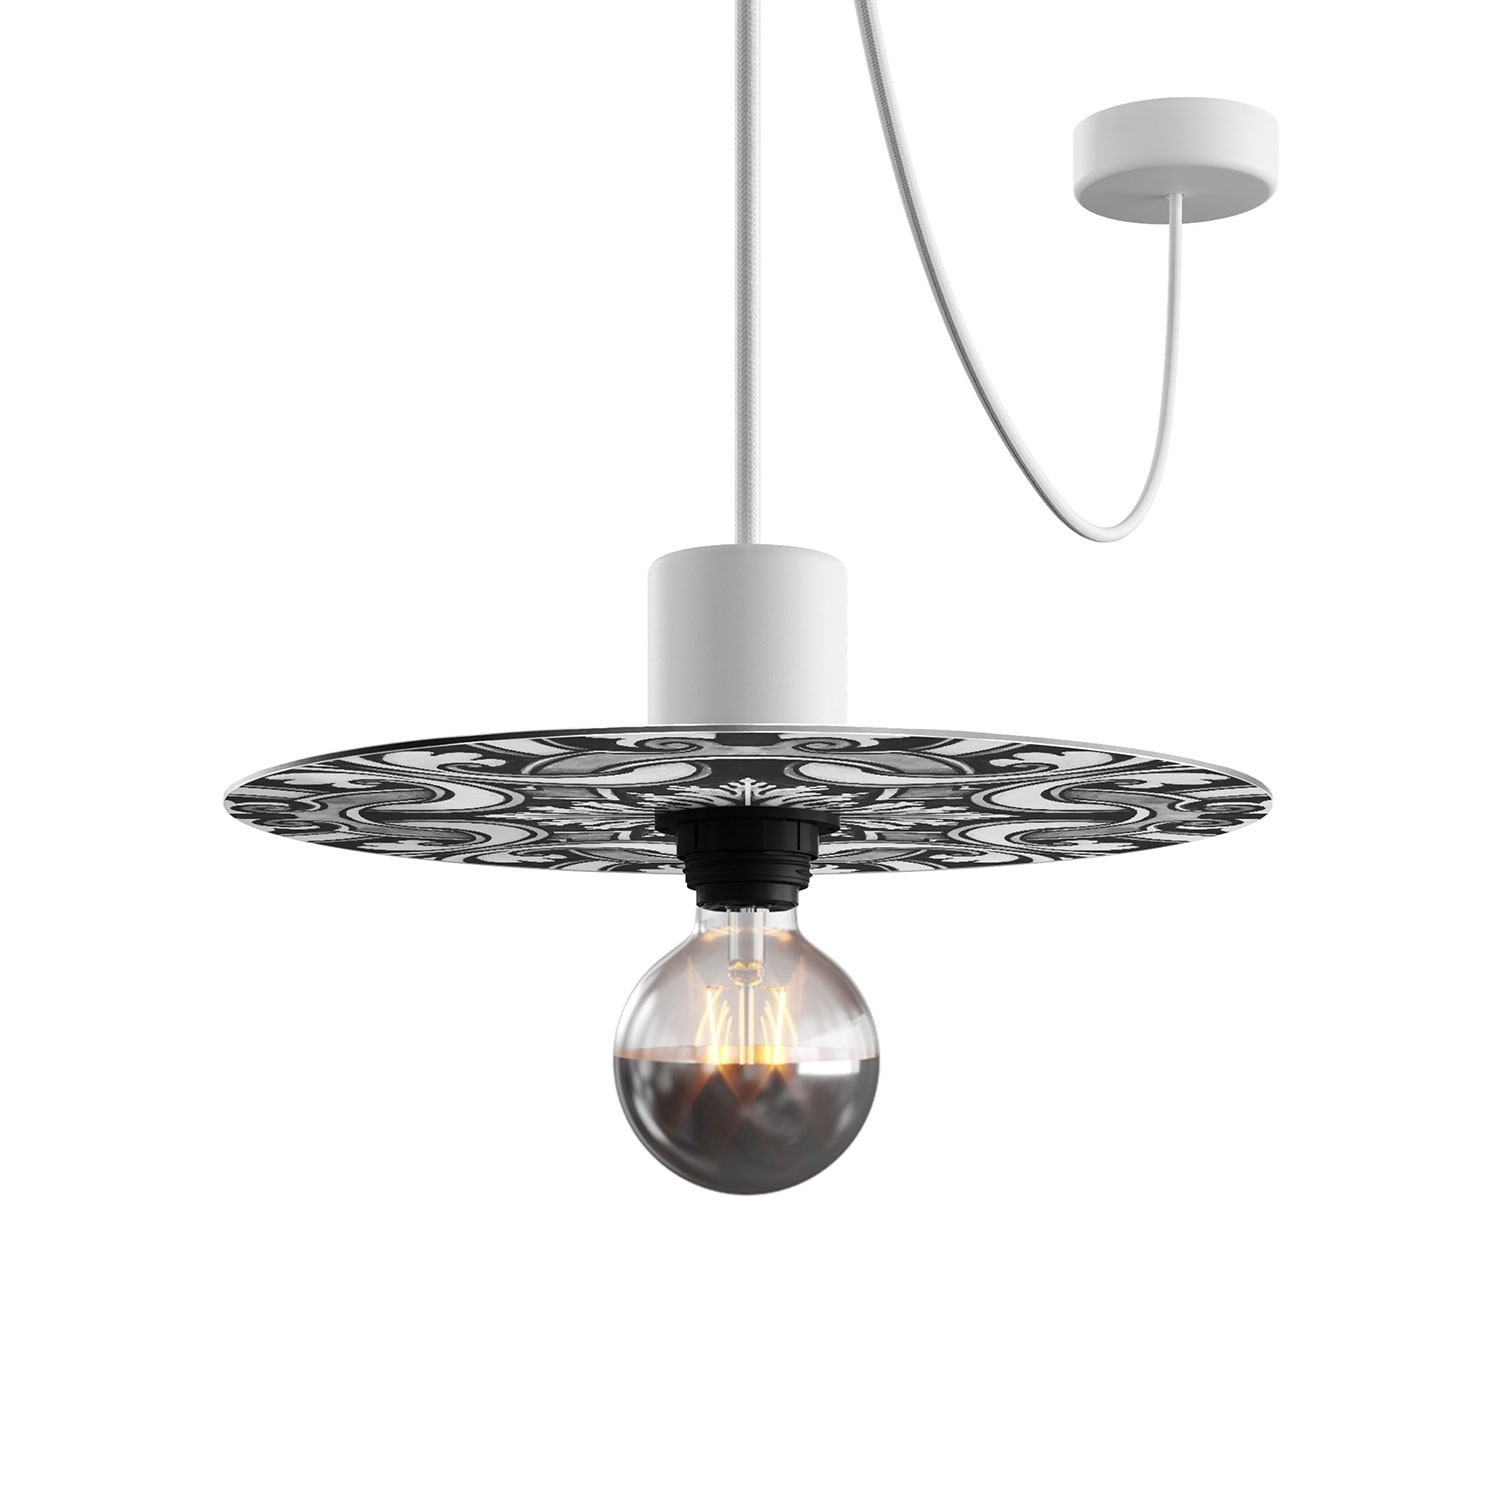 Mini Ellepì 'Maioliche' flad lampeskærm ideel til ophæng og væglamper eller til snorelys, 24 cm i diameter - Fremstillet i